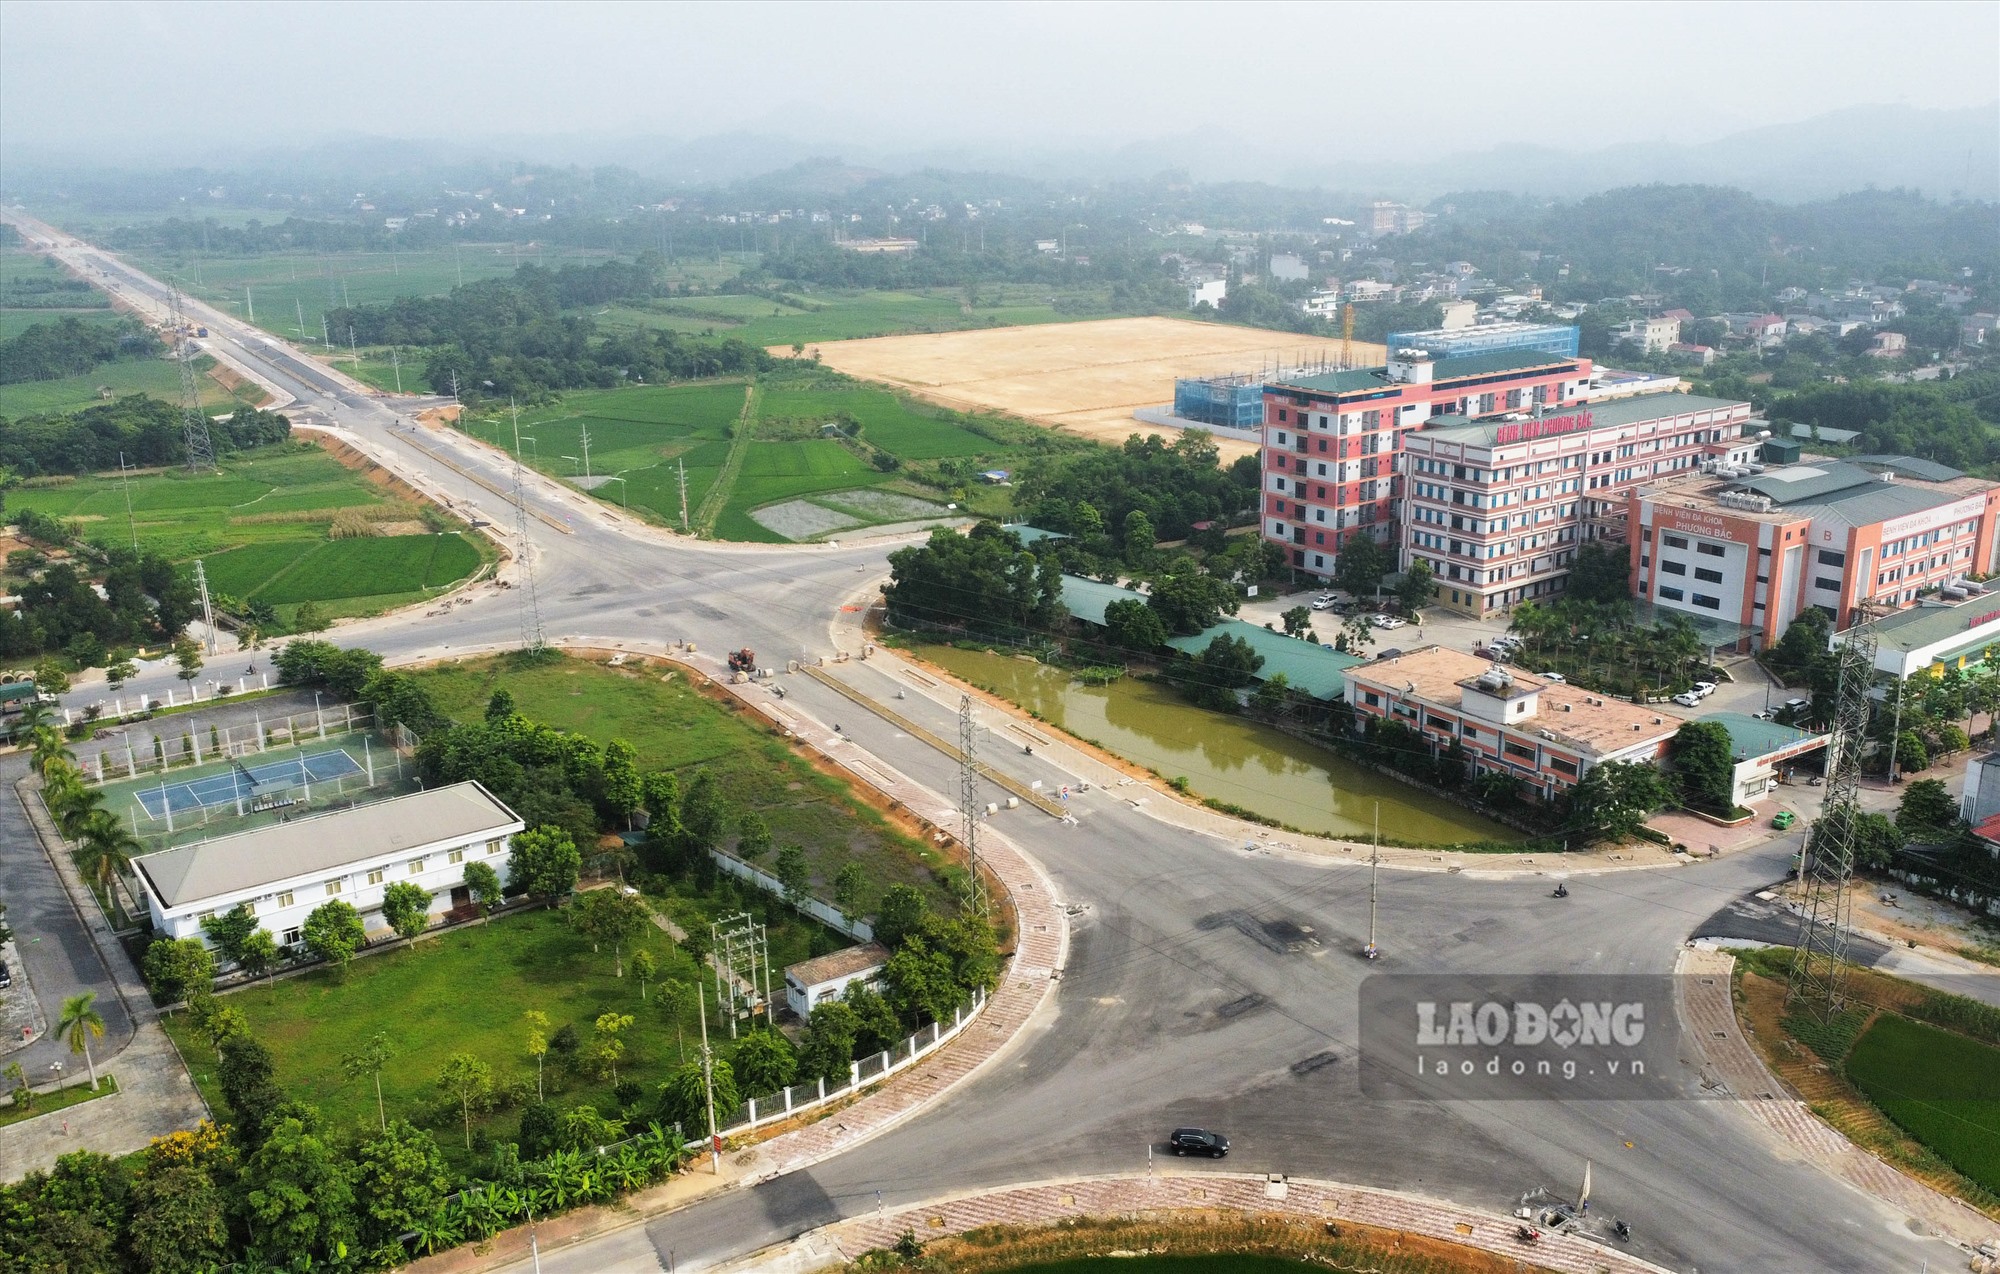 Dự án đường trục phát triển đô thị từ TP Tuyên Quang đi trung tâm huyện Yên Sơn được khởi công đầu tháng 11.2021 với chiều dai 10,02km, tổng mức đầu tư 635 tỉ đồng. Đây được đánh giá là con đường giao thông cấp II quy mô, đồng bộ tiêu chuẩn đô thị của tỉnh miền núi Tuyên Quang.